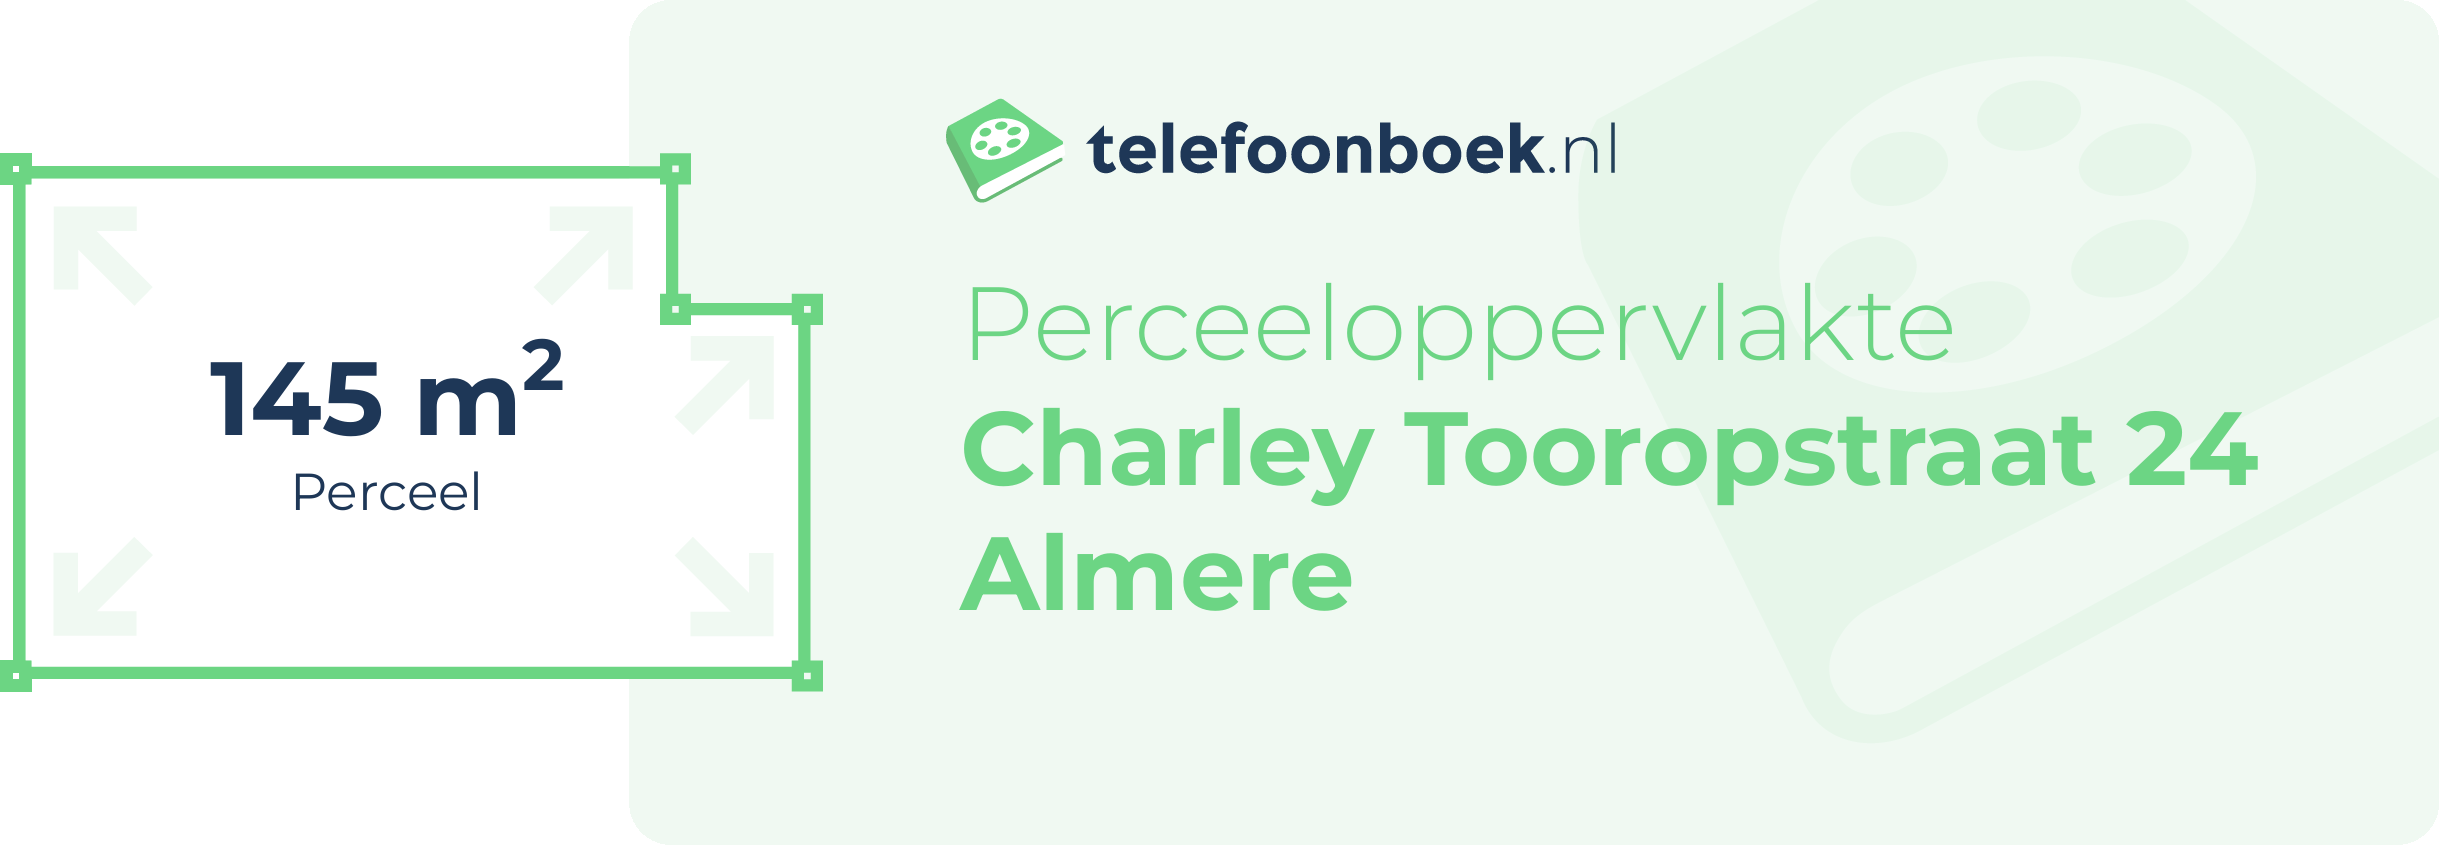 Perceeloppervlakte Charley Tooropstraat 24 Almere